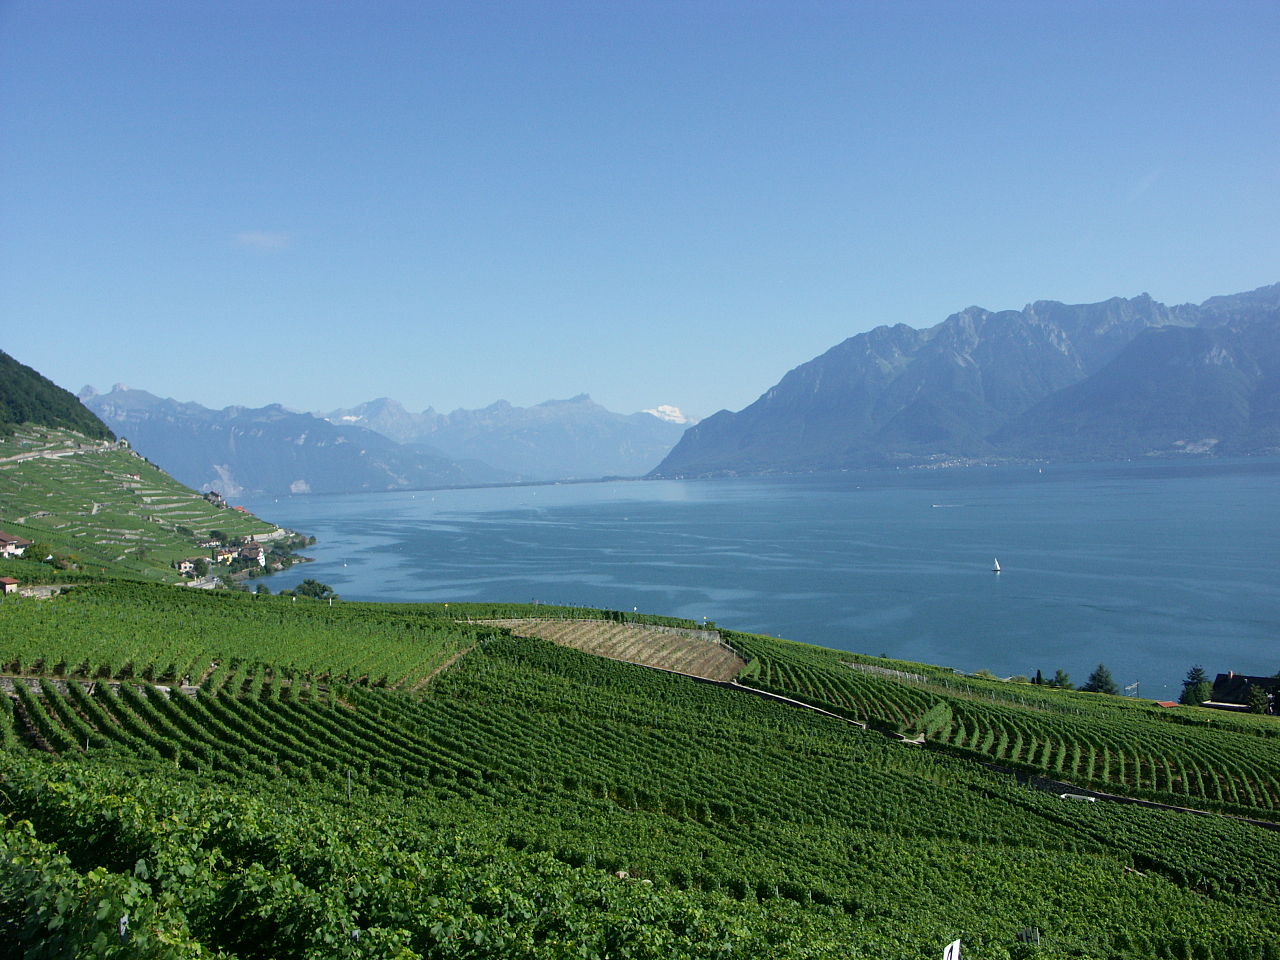 Abbildung 2 zeigt die Weinberge des Lavaux mit Blick auf den Genfersee und die Alpen. Foto: CalistaZ, Multilizenz mit GNU Free Documentation License (GFDL) und Creative Commons CC-BY-SA-3.0.